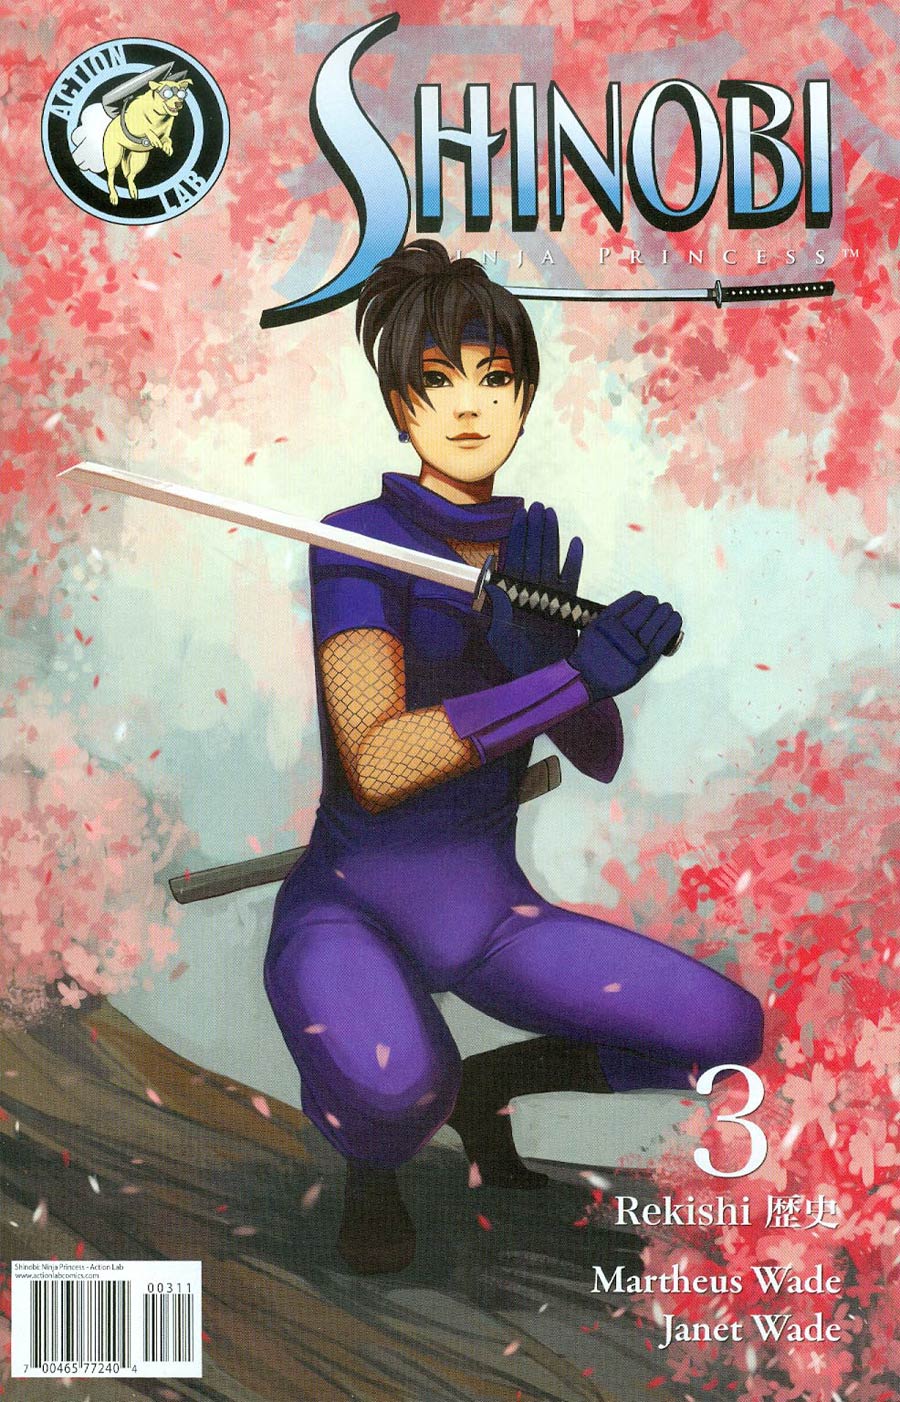 Shinobi Ninja Princess #3